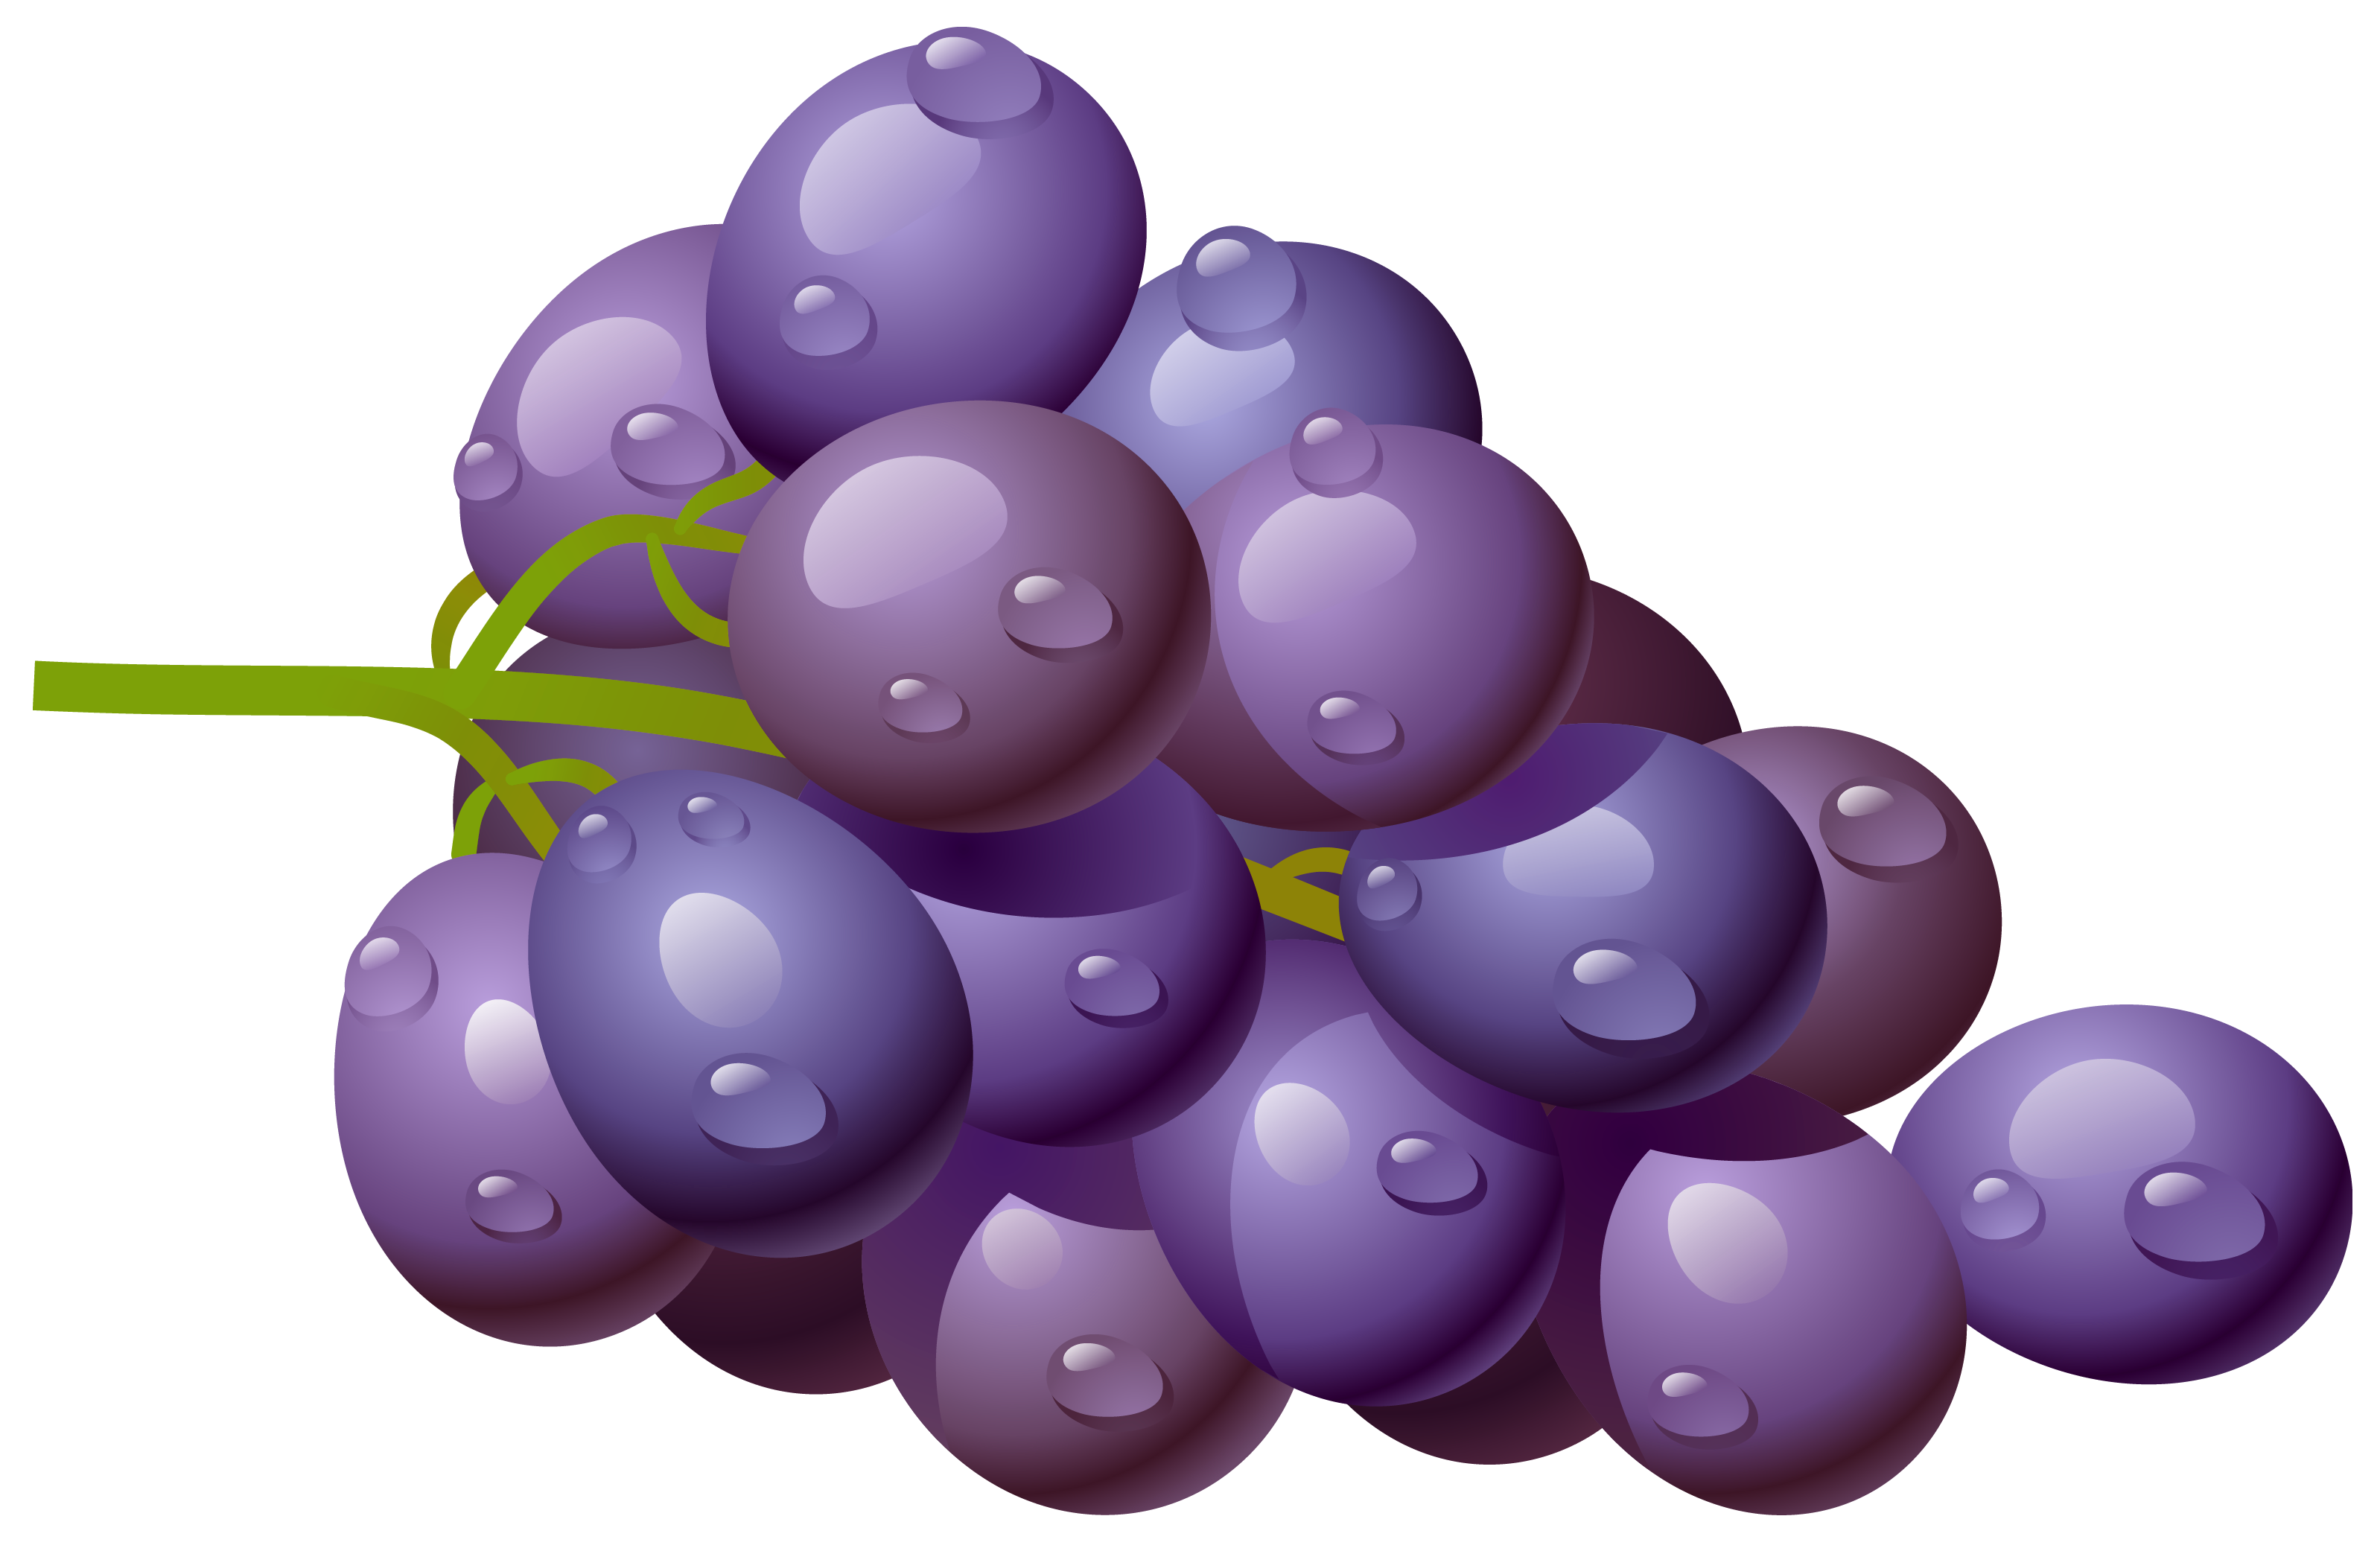 Grape cliparts